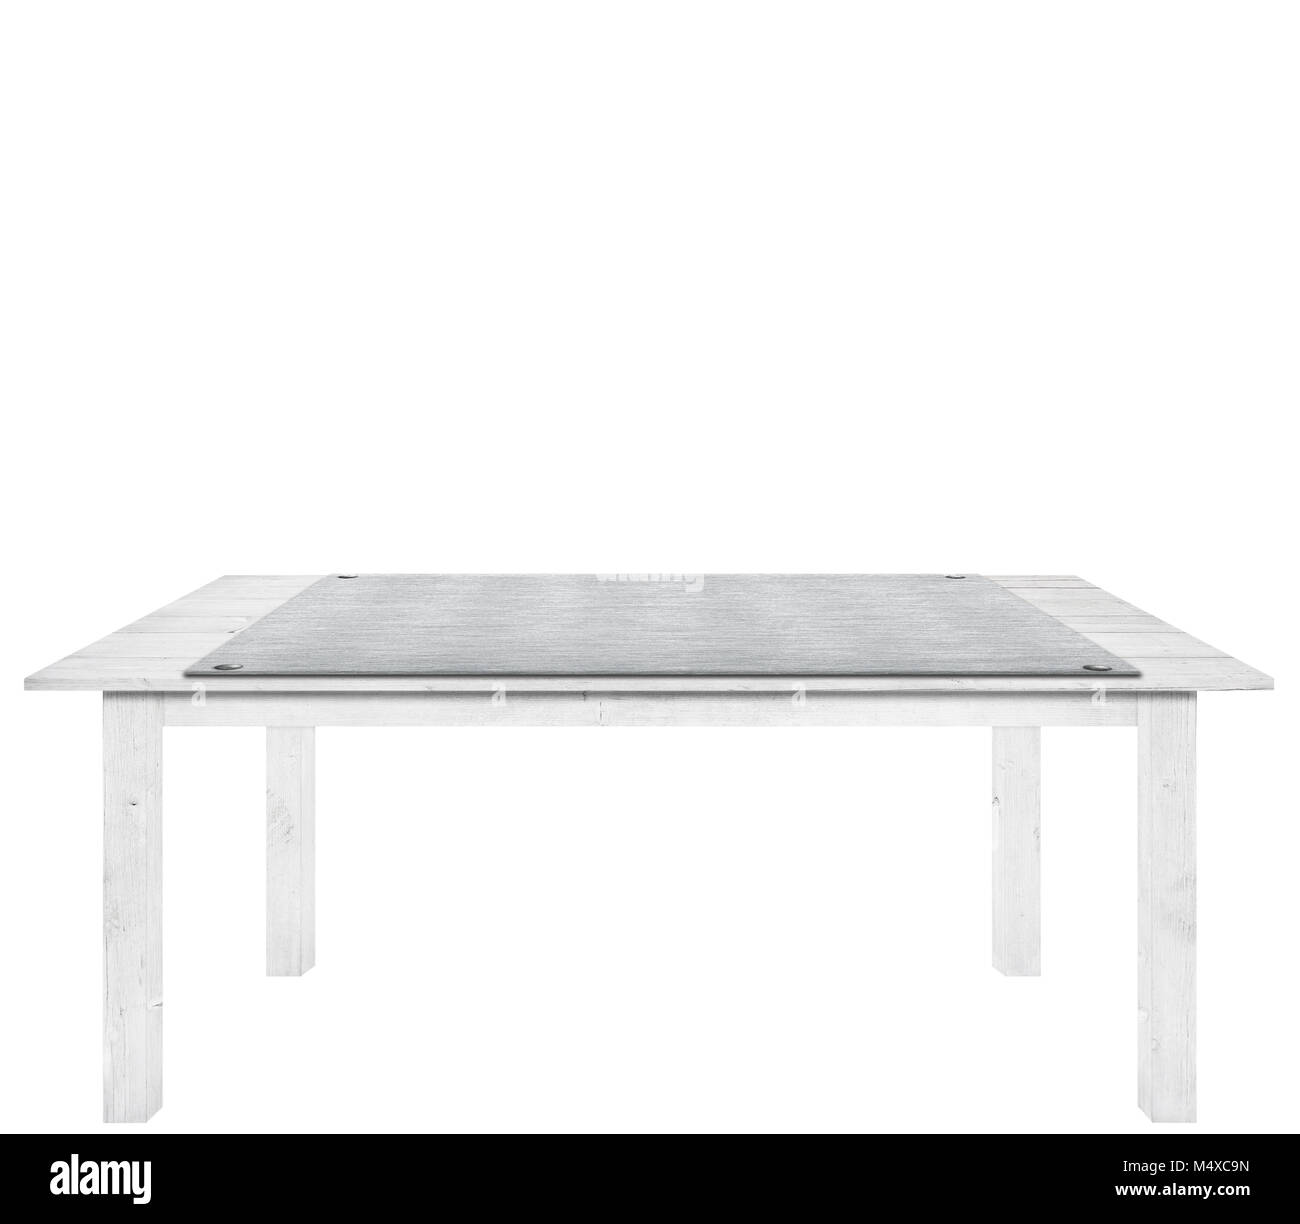 Tabla de tablones de madera con metal, placa de aluminio en la parte superior está aislado sobre fondo blanco, utilizado para mostrar los objetos. Foto de stock